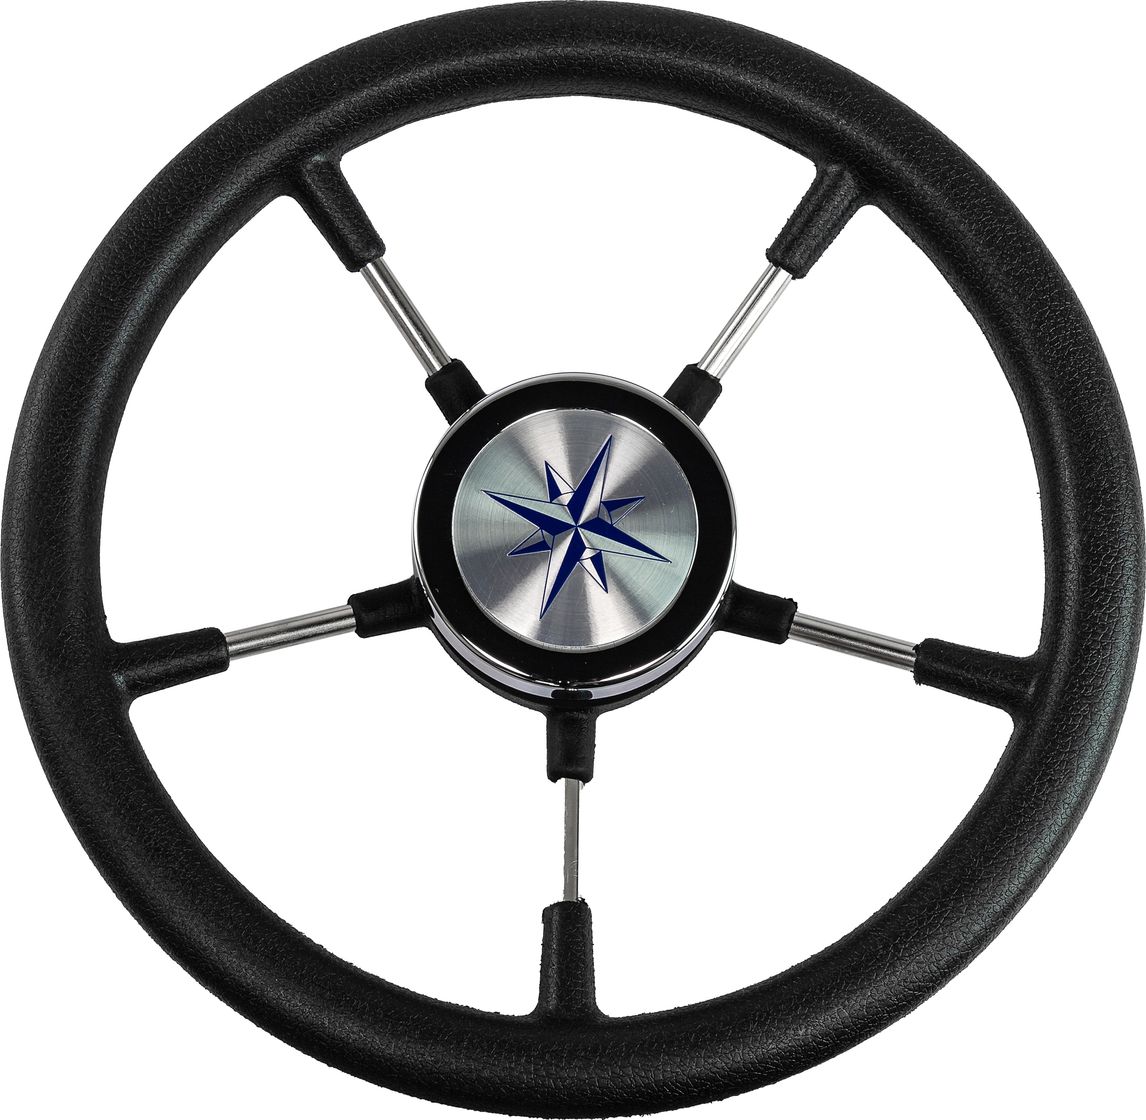 Рулевое колесо RIVA RSL обод черный, спицы серебряные д. 320 мм VN732022-01 рулевое колесо manta обод белый спицы серебряные д 355 мм vn70551 08